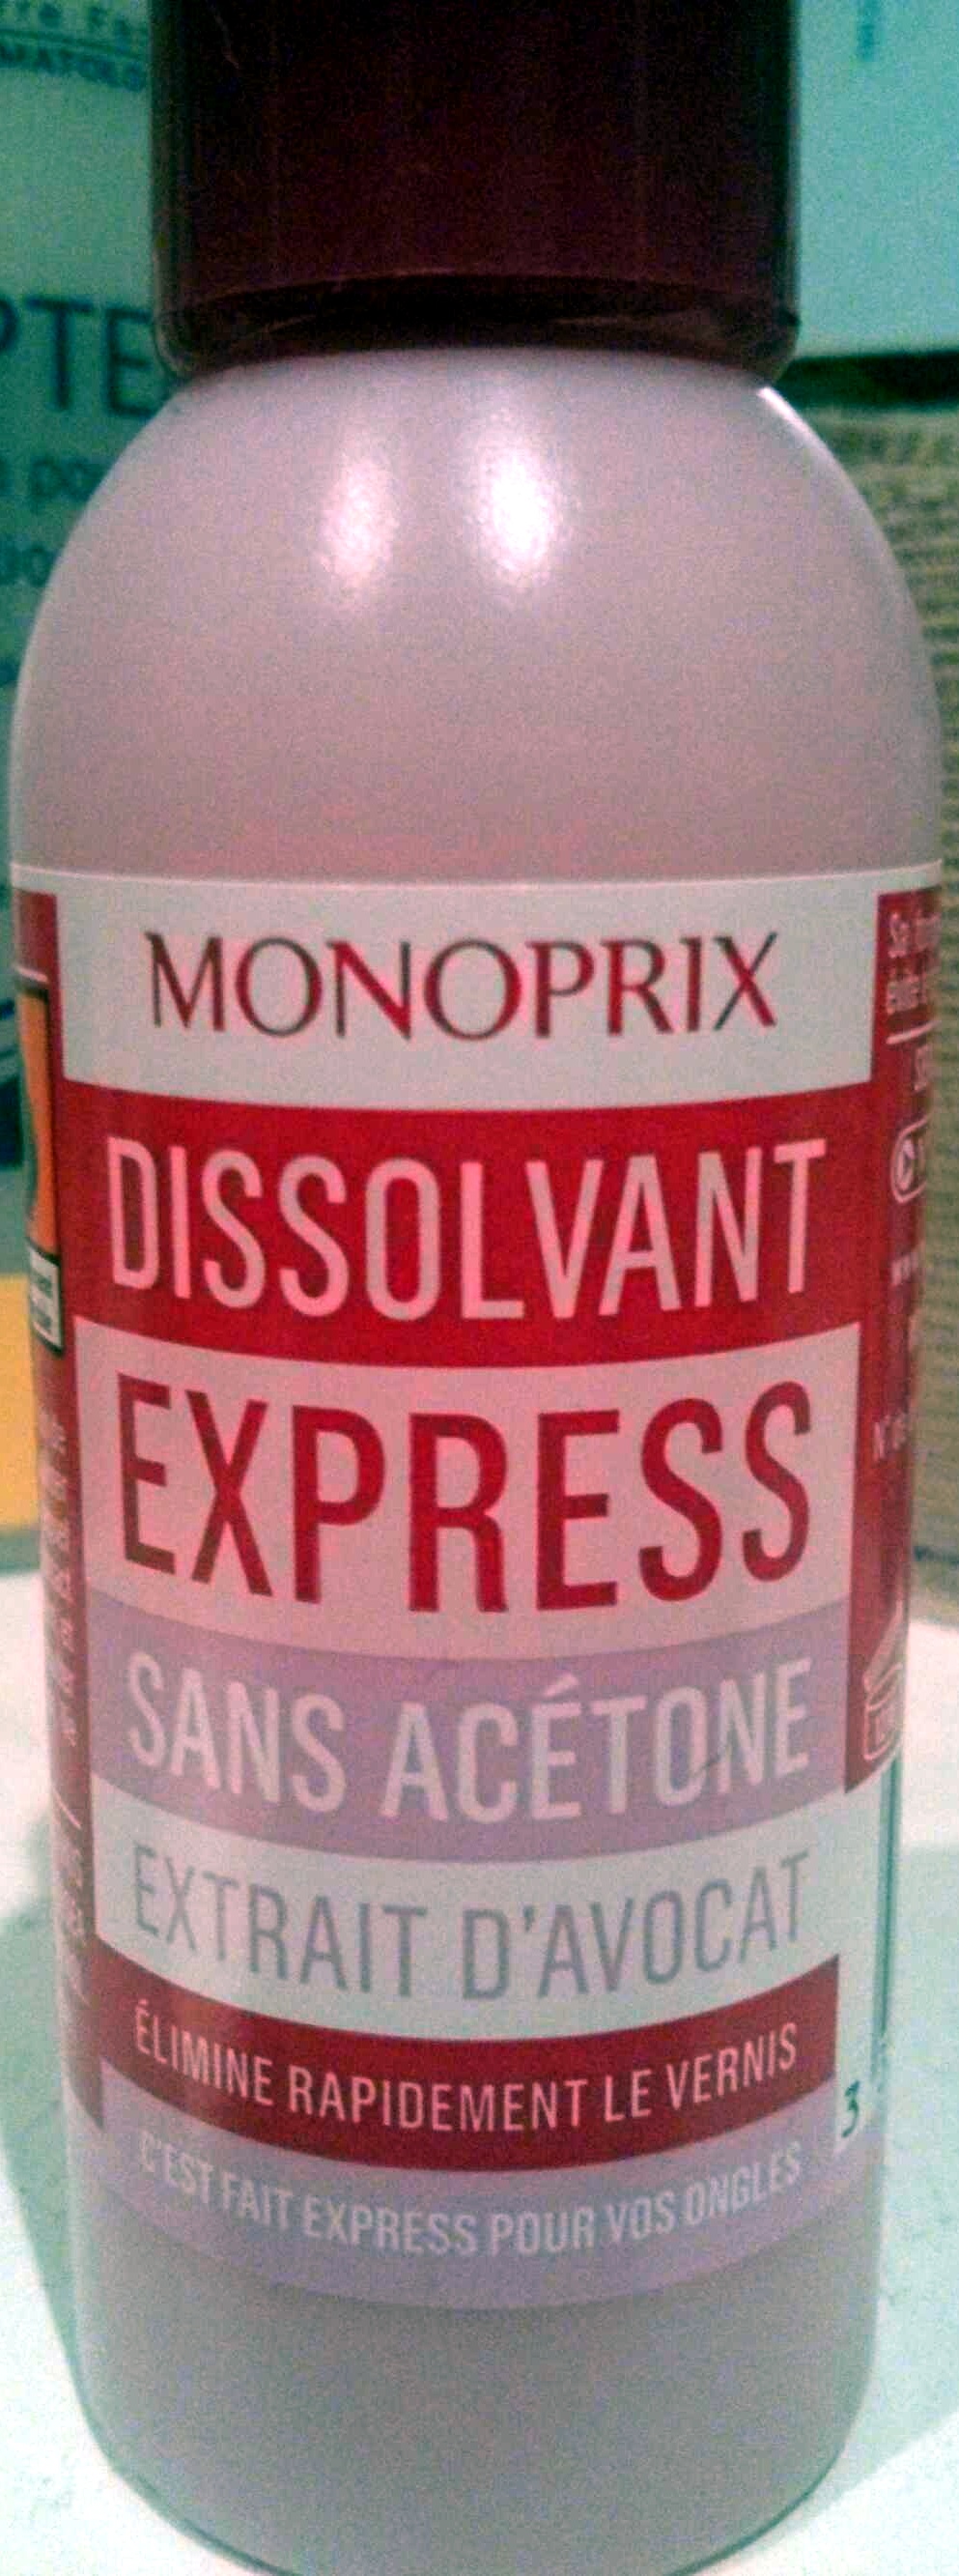 Dissolvant express sans acétone extrait d'avocat - מוצר - fr